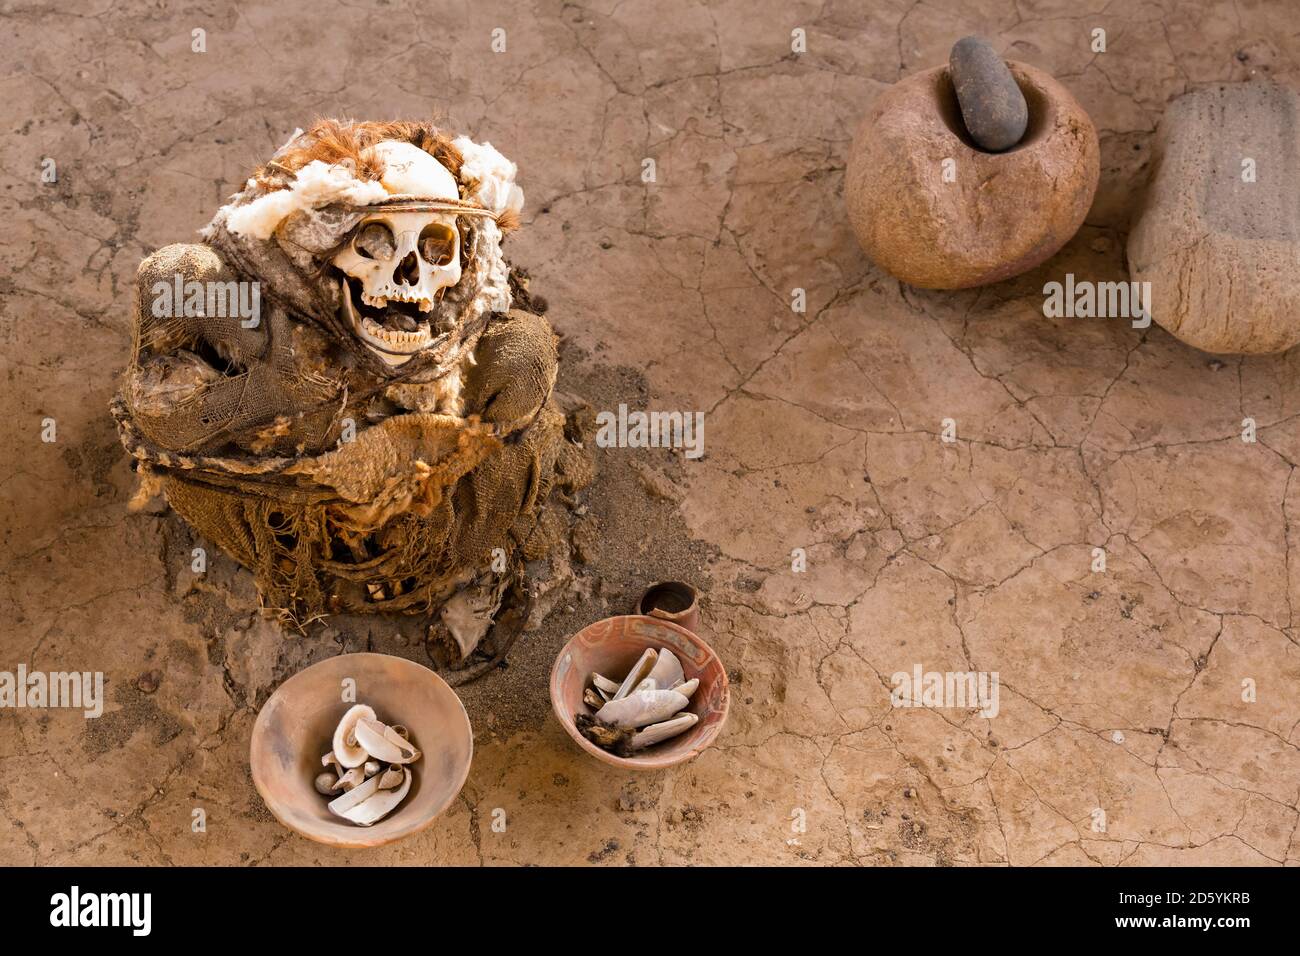 Perù, Nazca, cimitero di Chauchilla, mummia con beni tomba Foto Stock